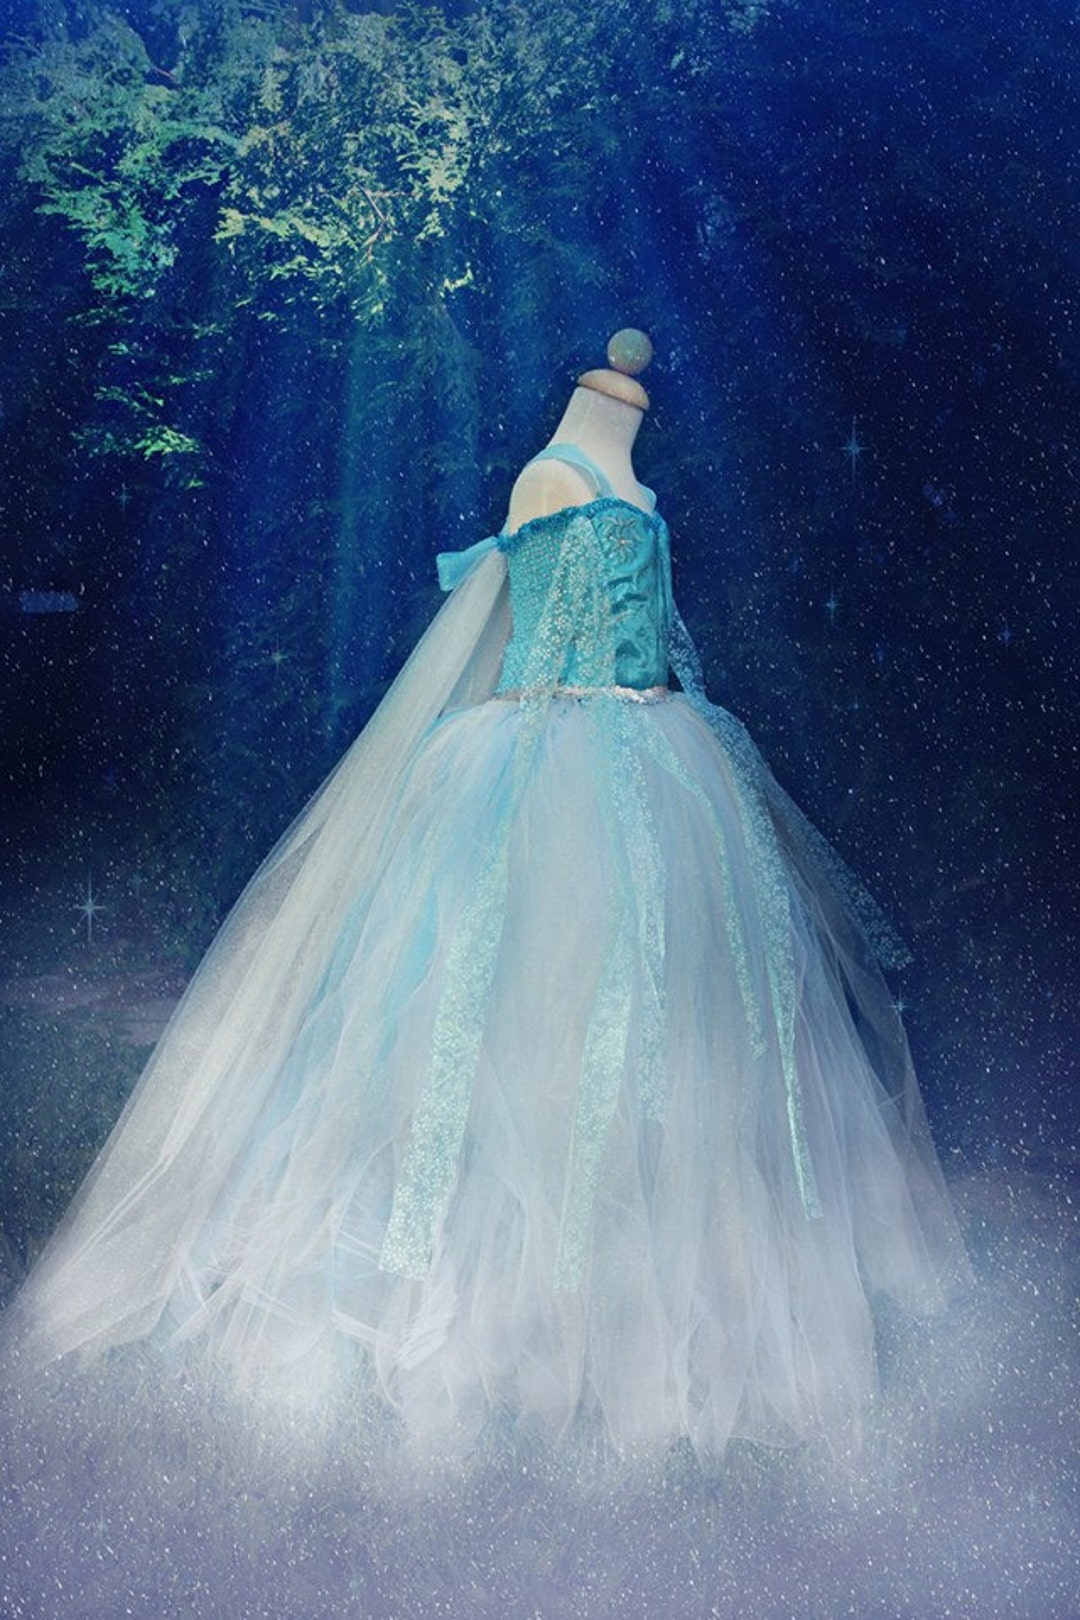 14 Prom Dresses Inspired by Disney Princesses | CafeMom.com